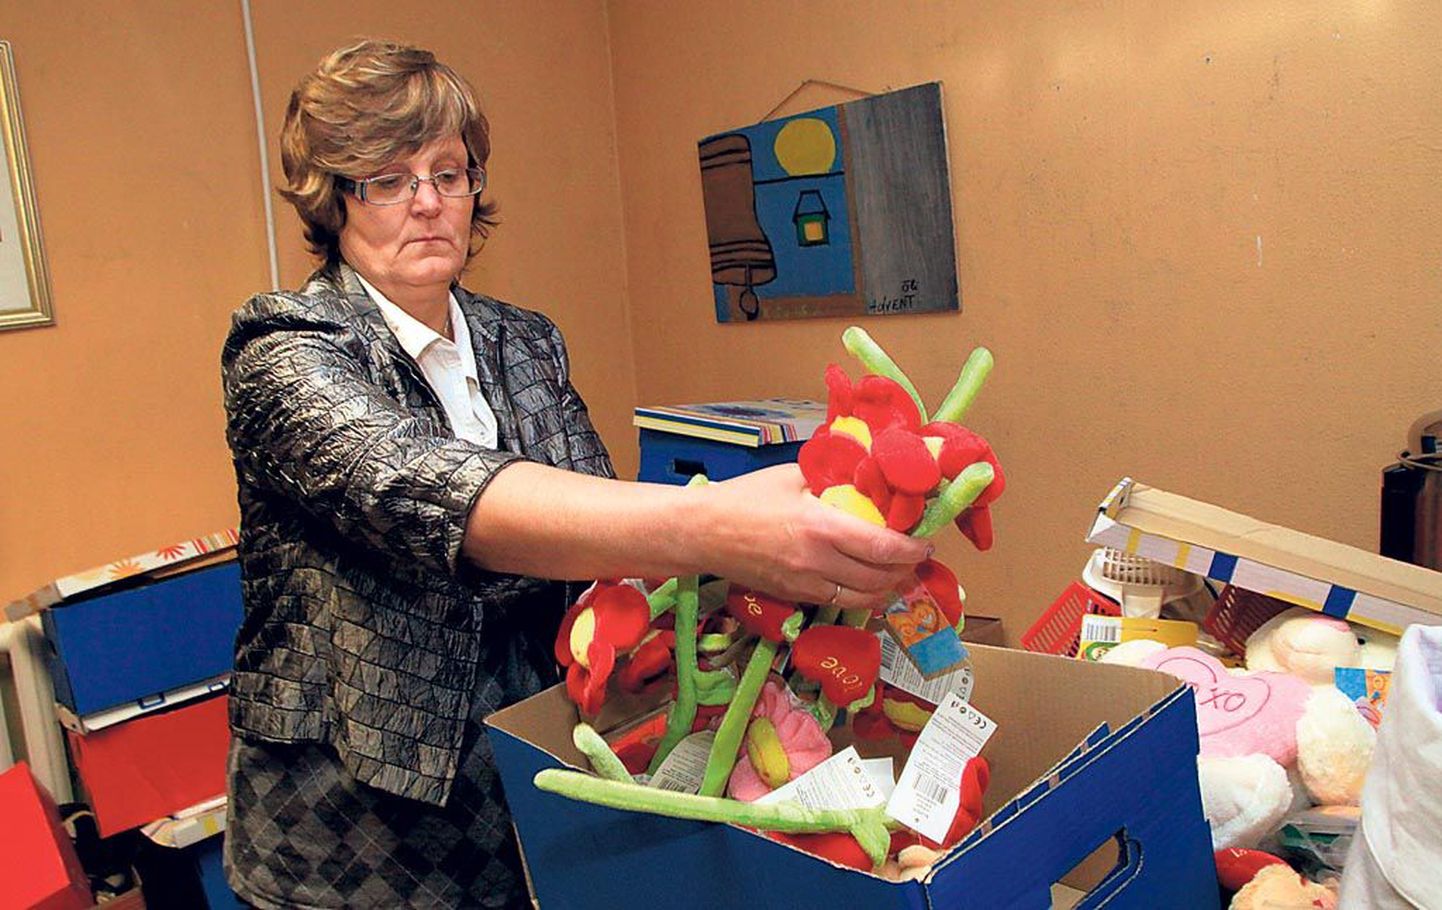 Shalomi abikeskuse juhataja Anne Aas rõõmustas, et lastekaitsepäeva eel saavad nad paljusid lapsi uute mänguasjadega üllatada.